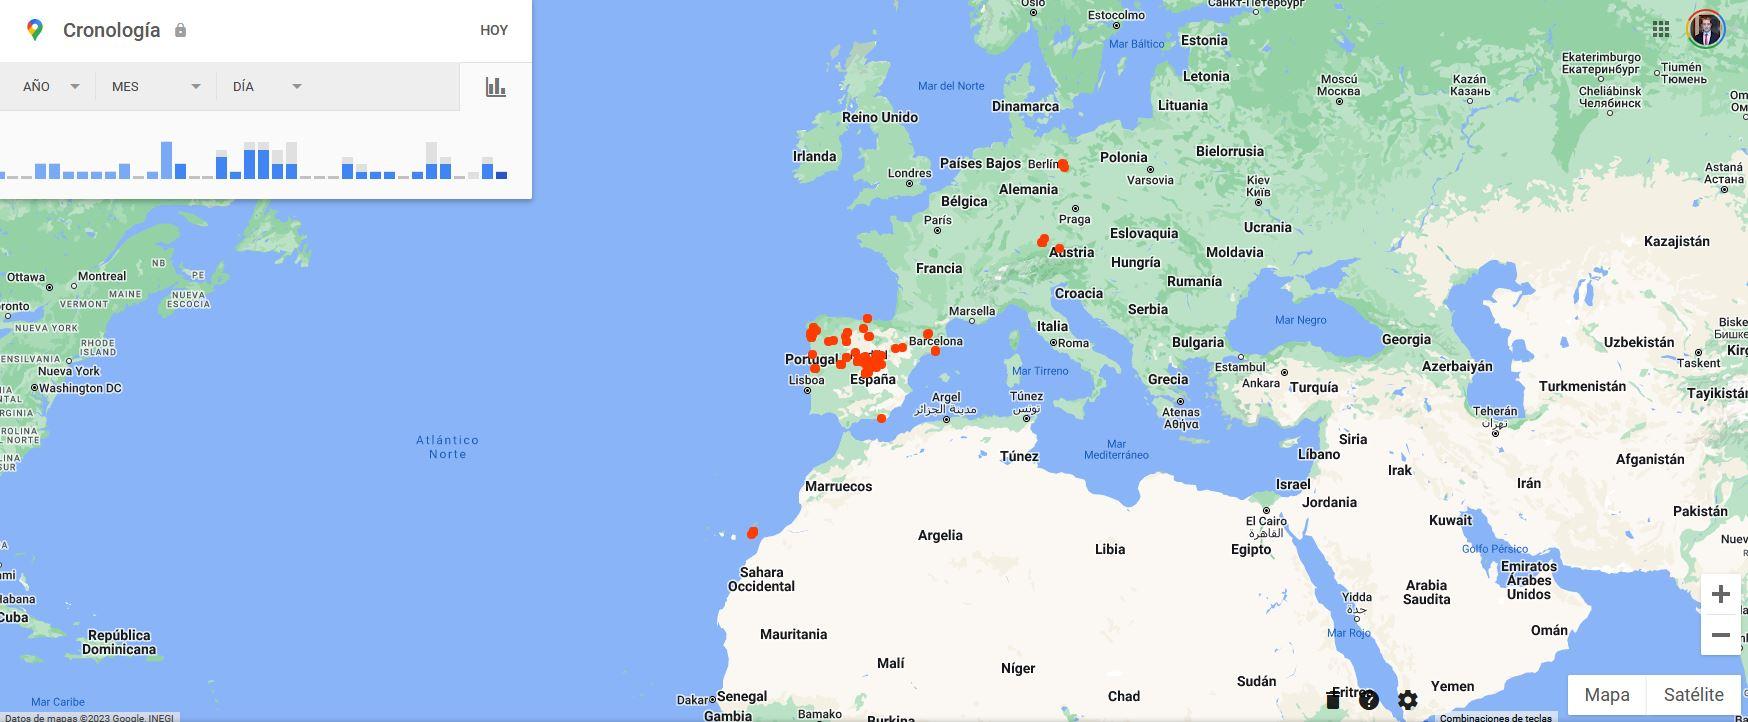 Sitios más visitados por nosotros en Maps